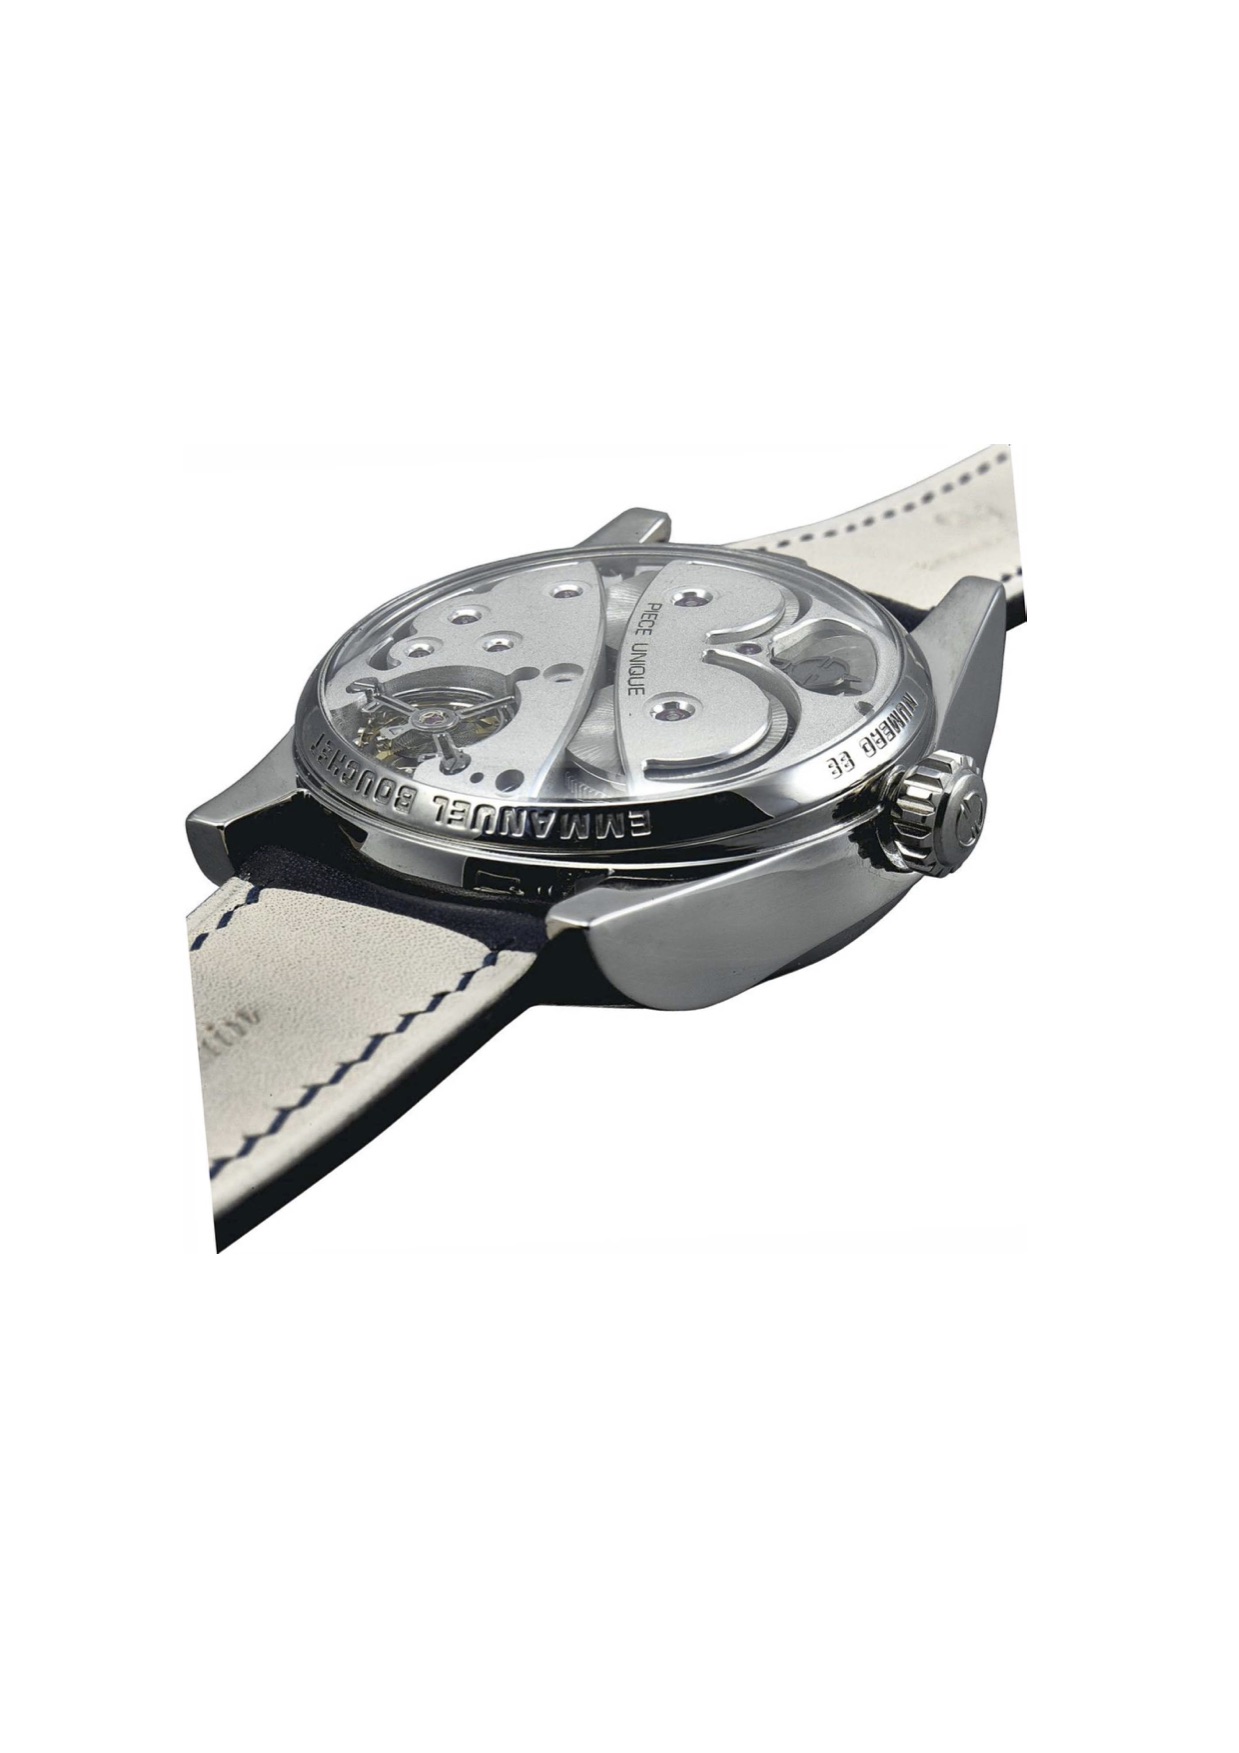 emmanuel-bouchet-piece-unique-for-christies-important-watches-dubai-auction-2